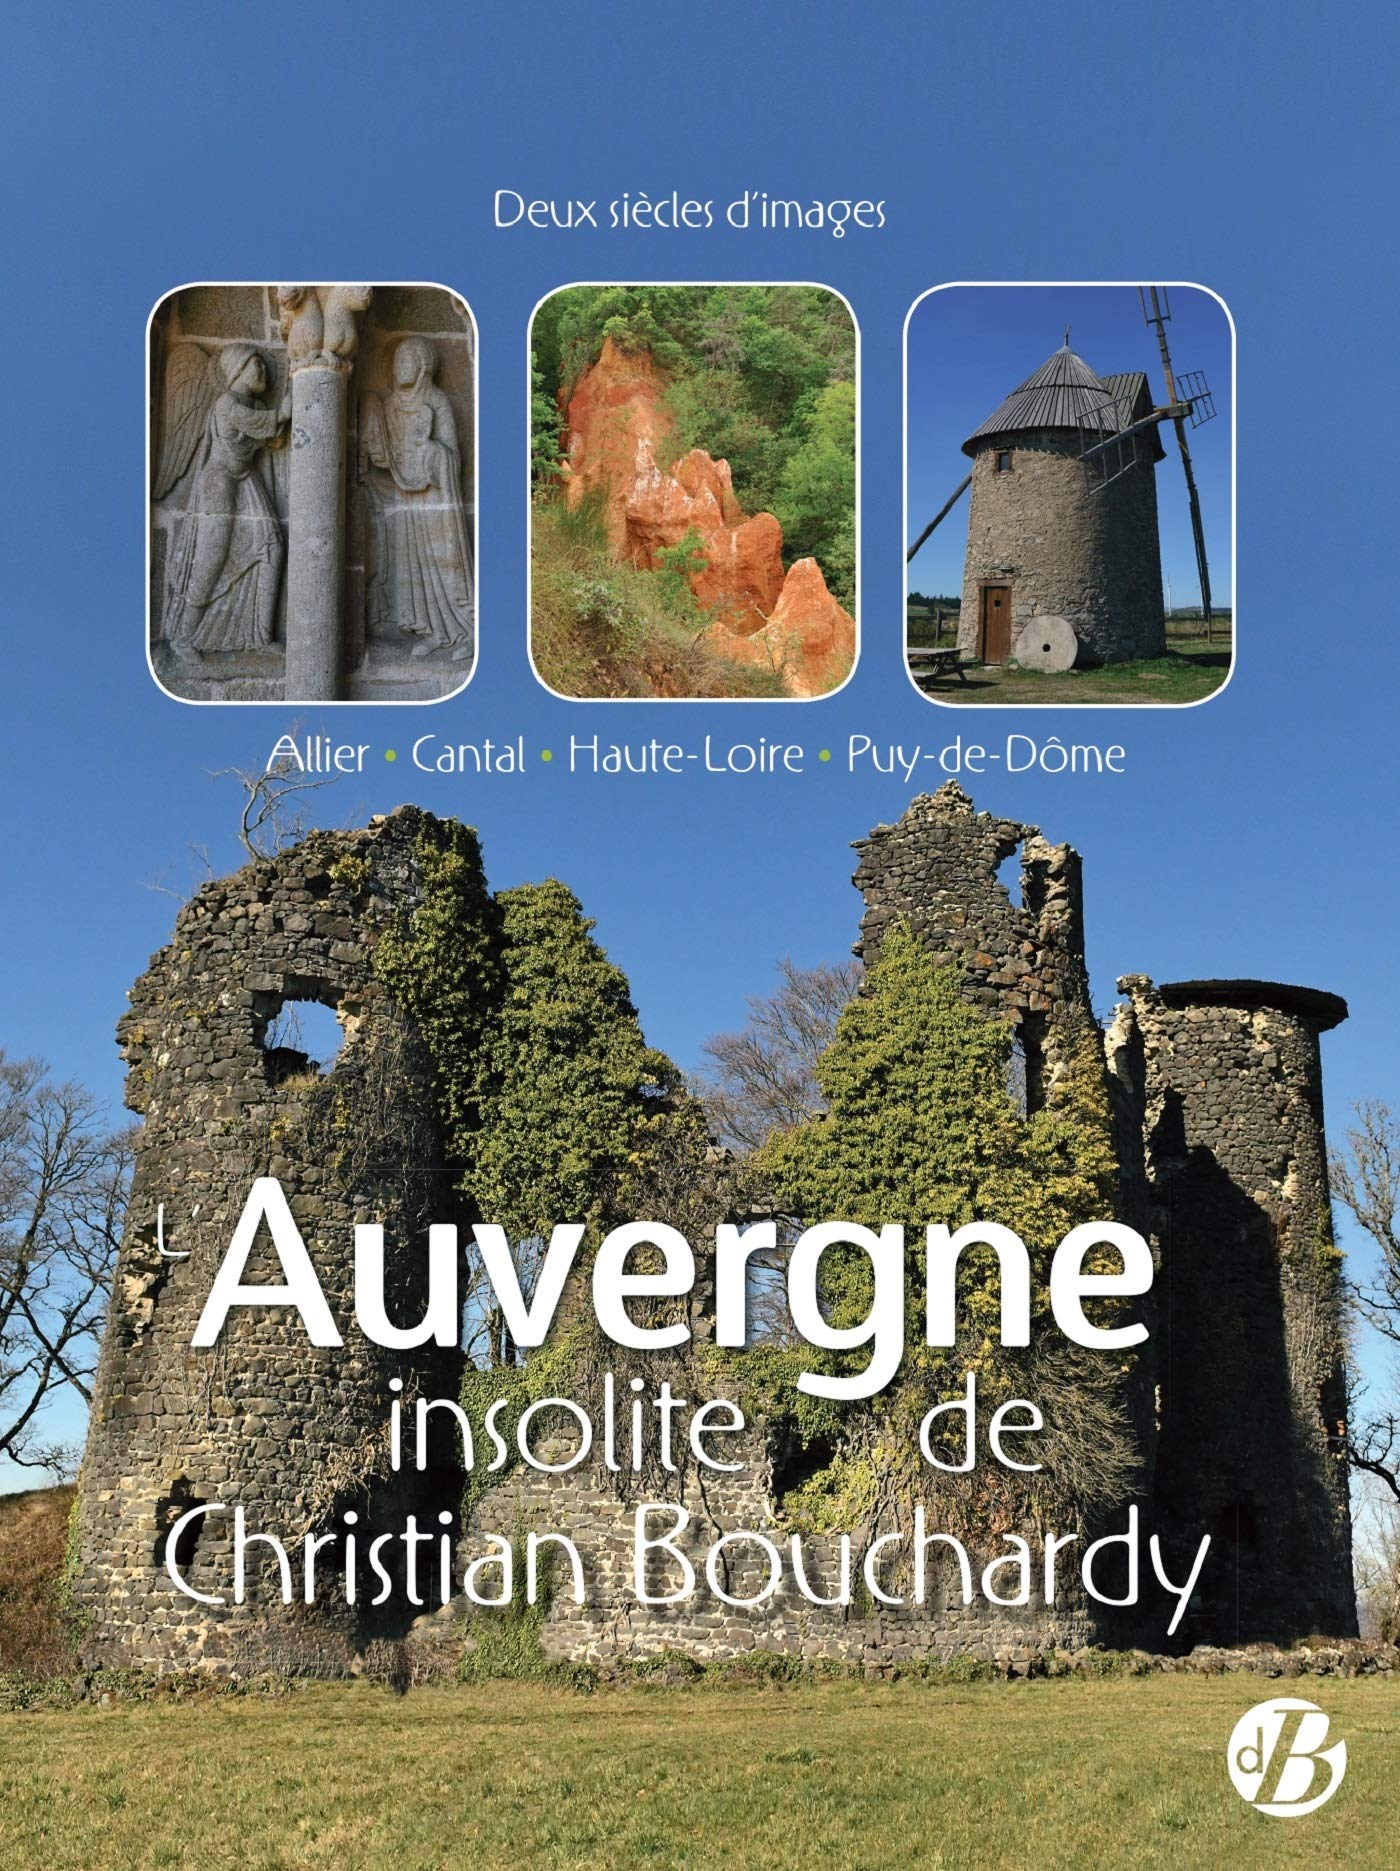 L'Auvergne insolite de Christian Bouchardy : Allier, Cantal, Haute-Loire, Puy-de-Dôme : deux siècles